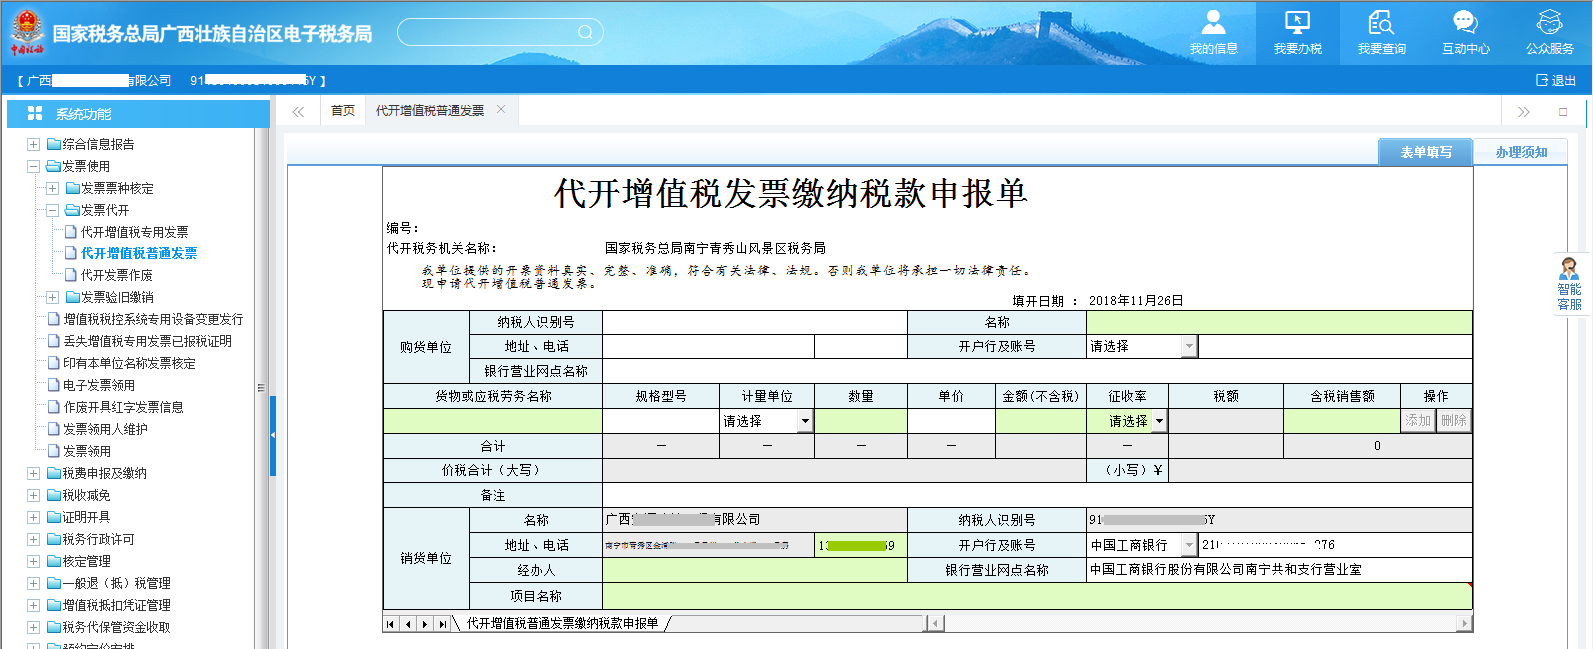 广西电子税务局代开增值税发票缴纳税款申报单